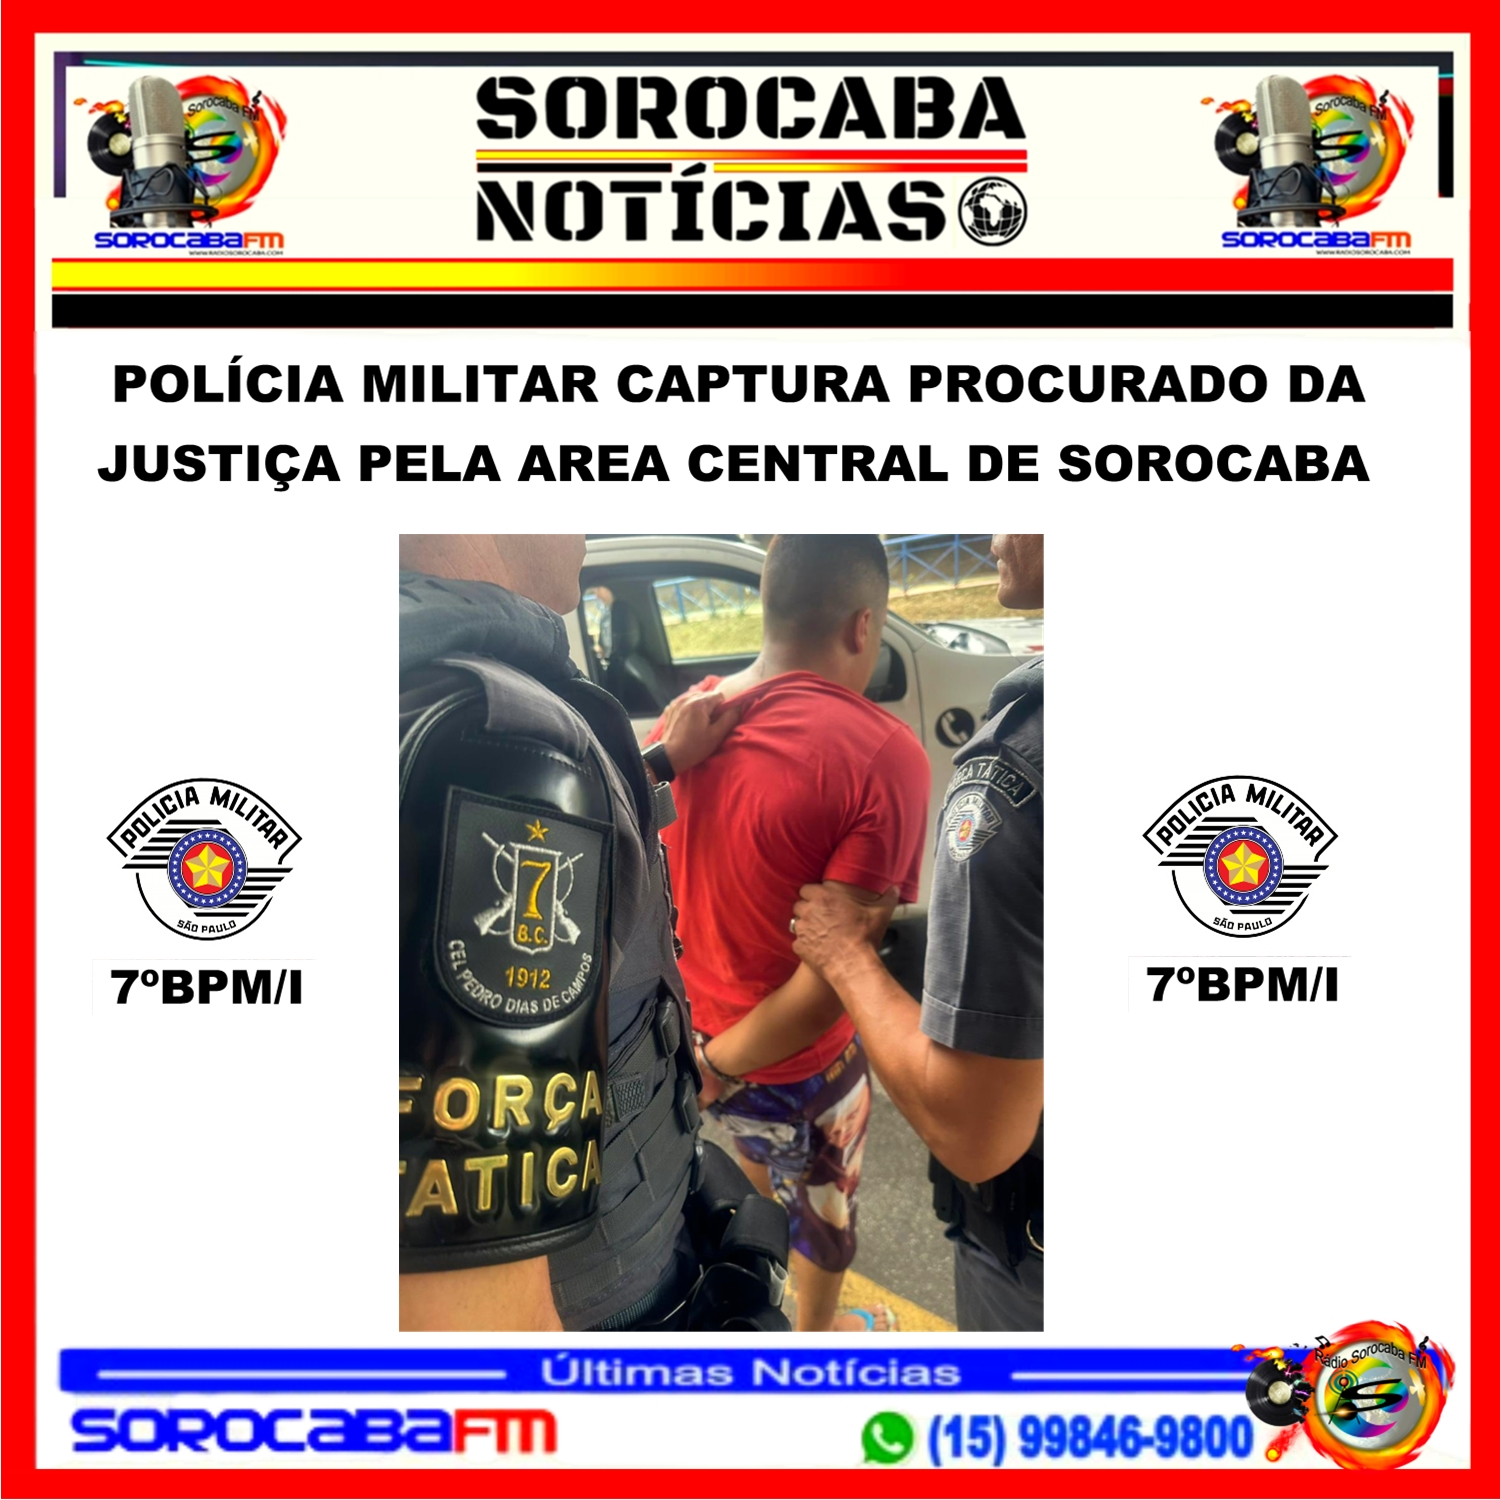 POLÍCIA MILITAR CAPTURA PROCURADO DA JUSTIÇA PELA ÁREA CENTRAL DE SOROCABA